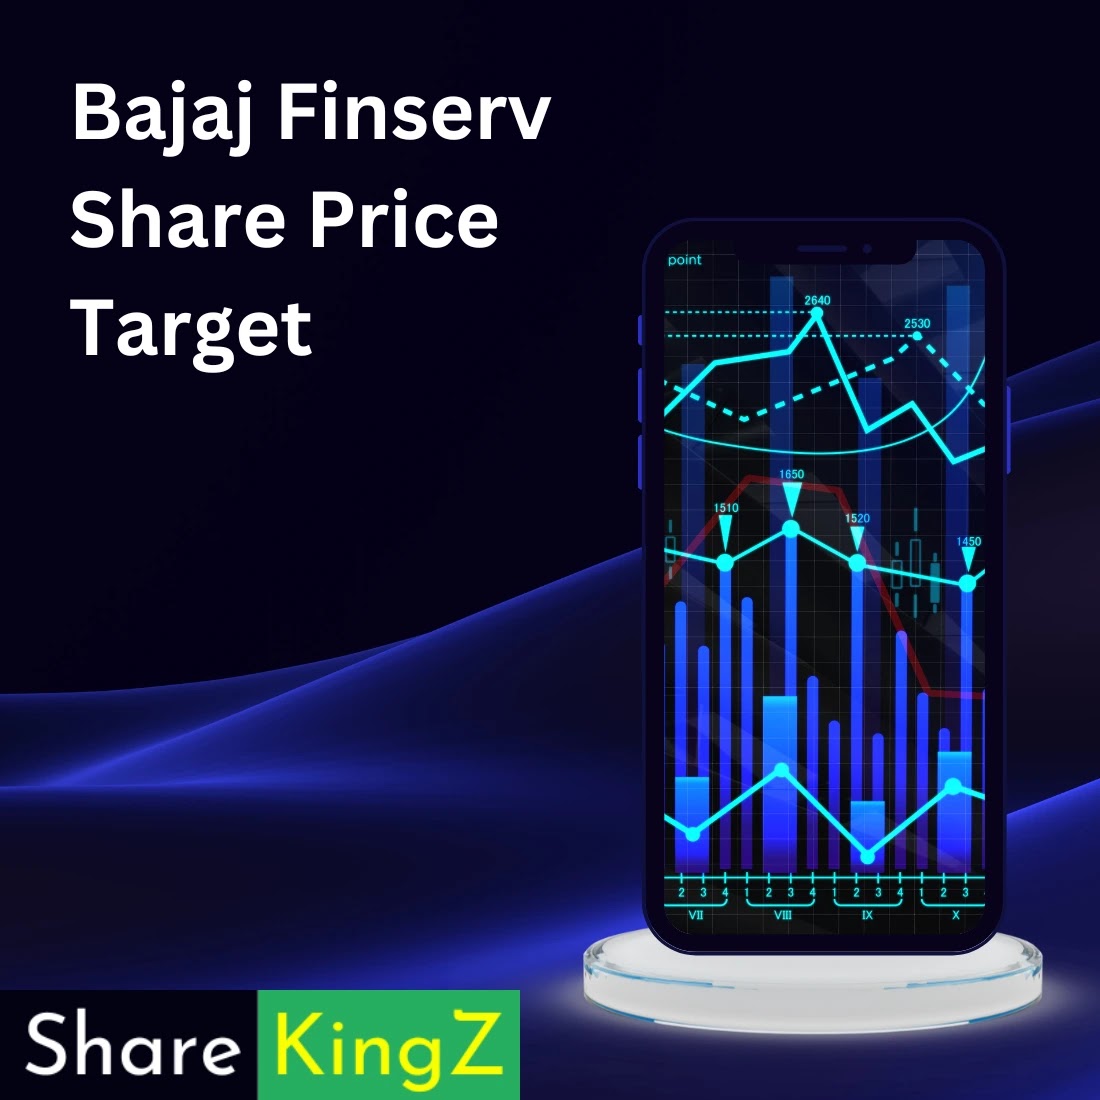 Bajaj Finserv Share Price Target